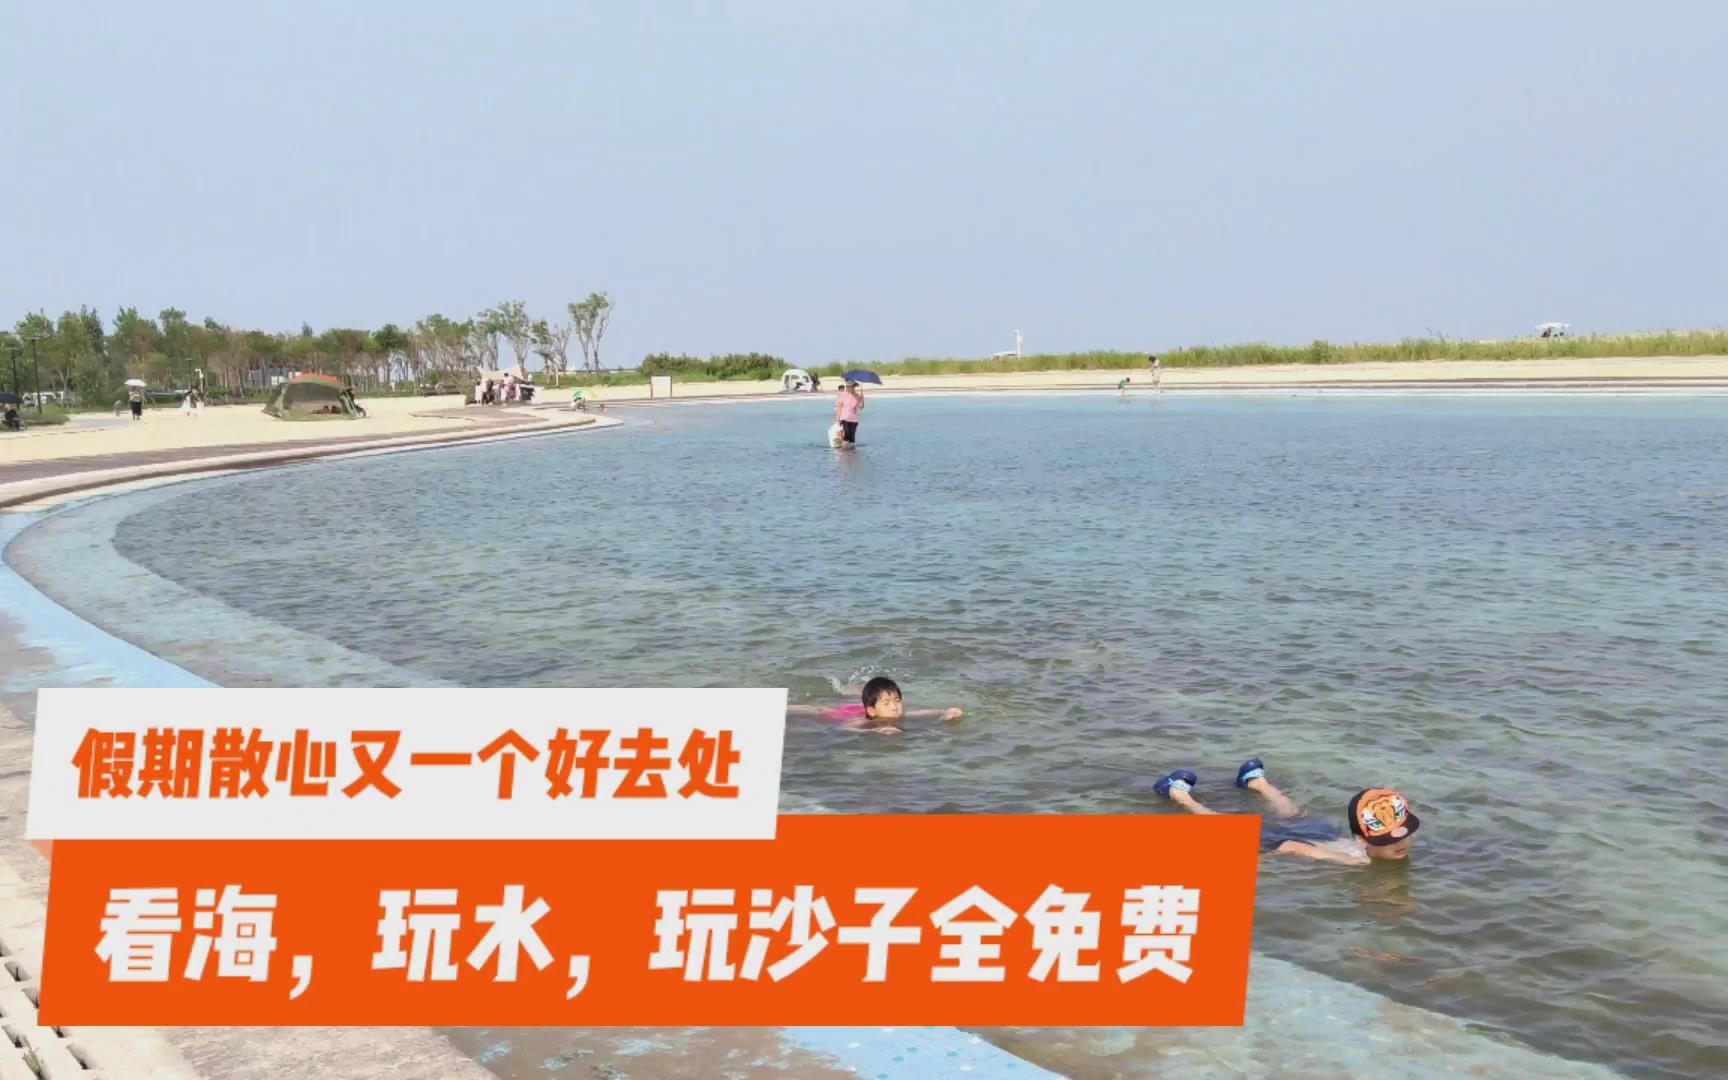 天津又一处亲海公园开放，最大特点就是免费免费全免费，看海玩水玩沙子全免费，就连停车也免费